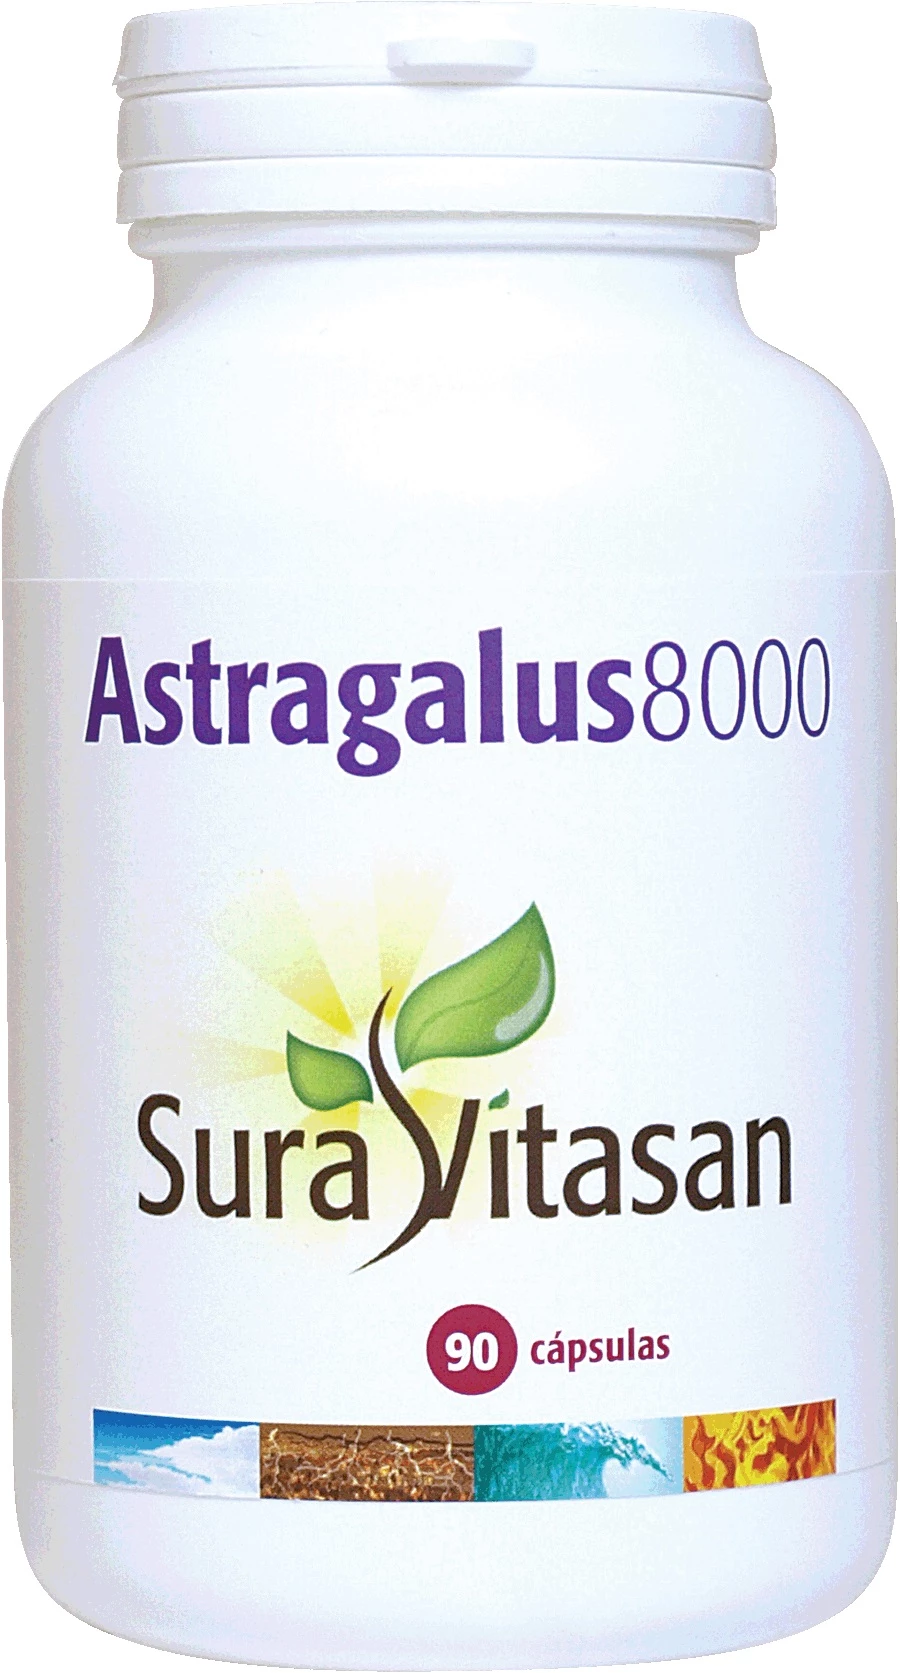 Sura Vitasan Astragalus 8000 500 mg, 90 cápsulas. 